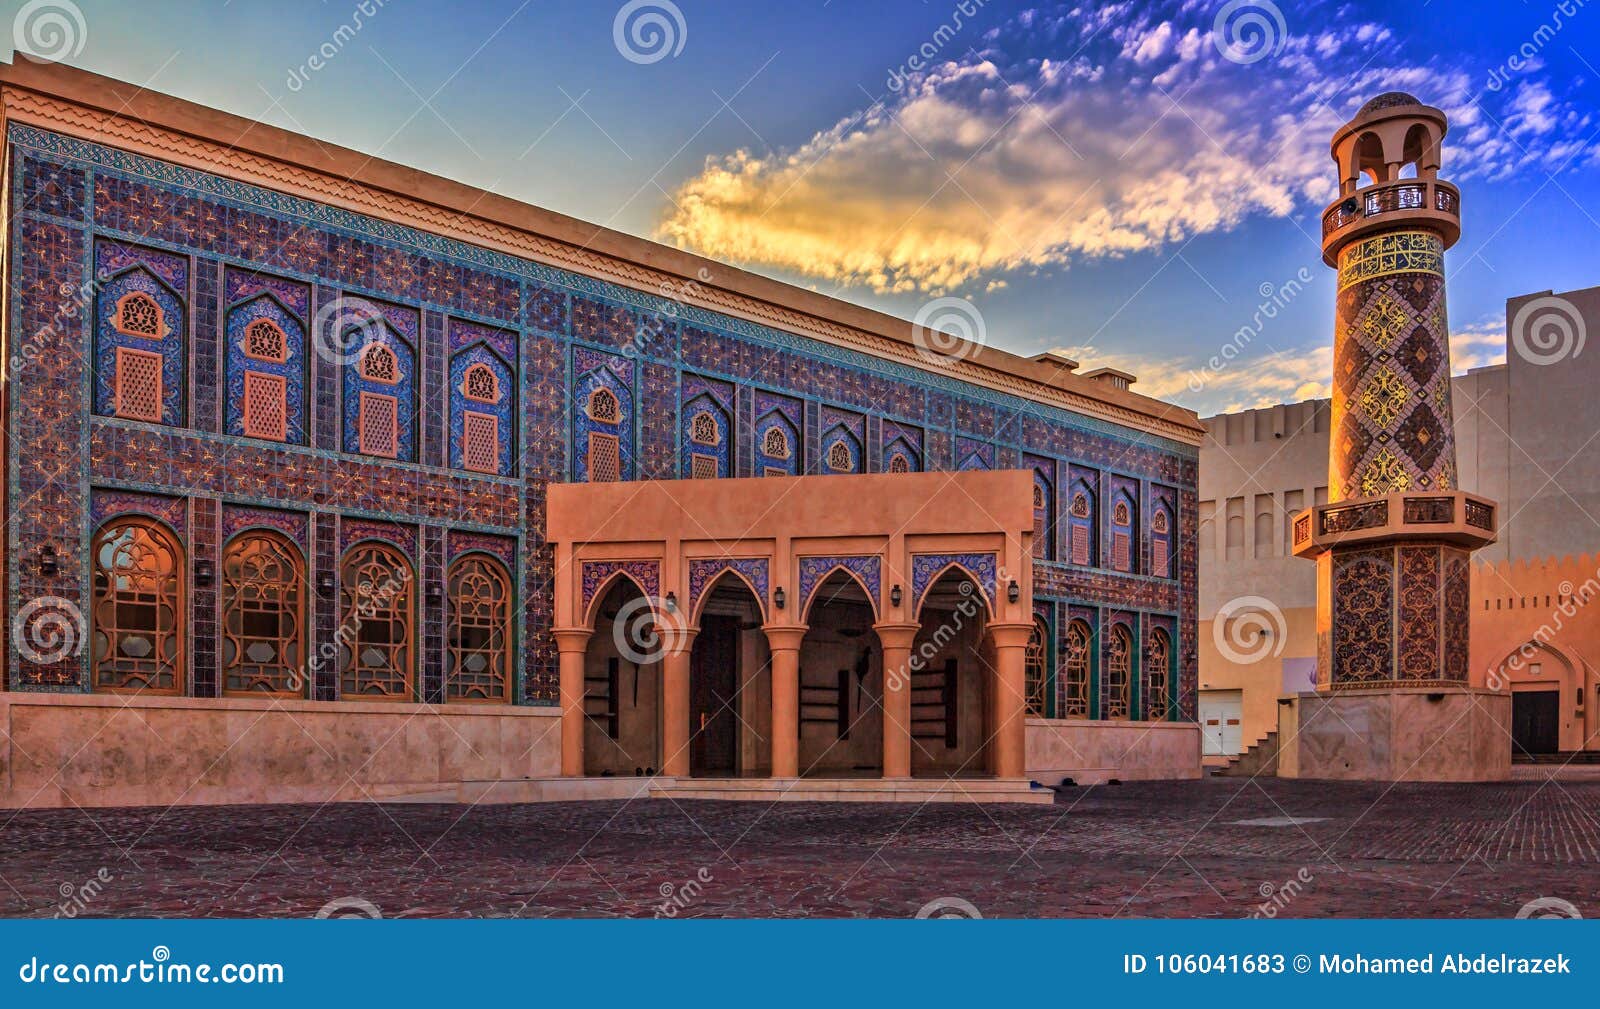 katara mosque,doha,qatar.